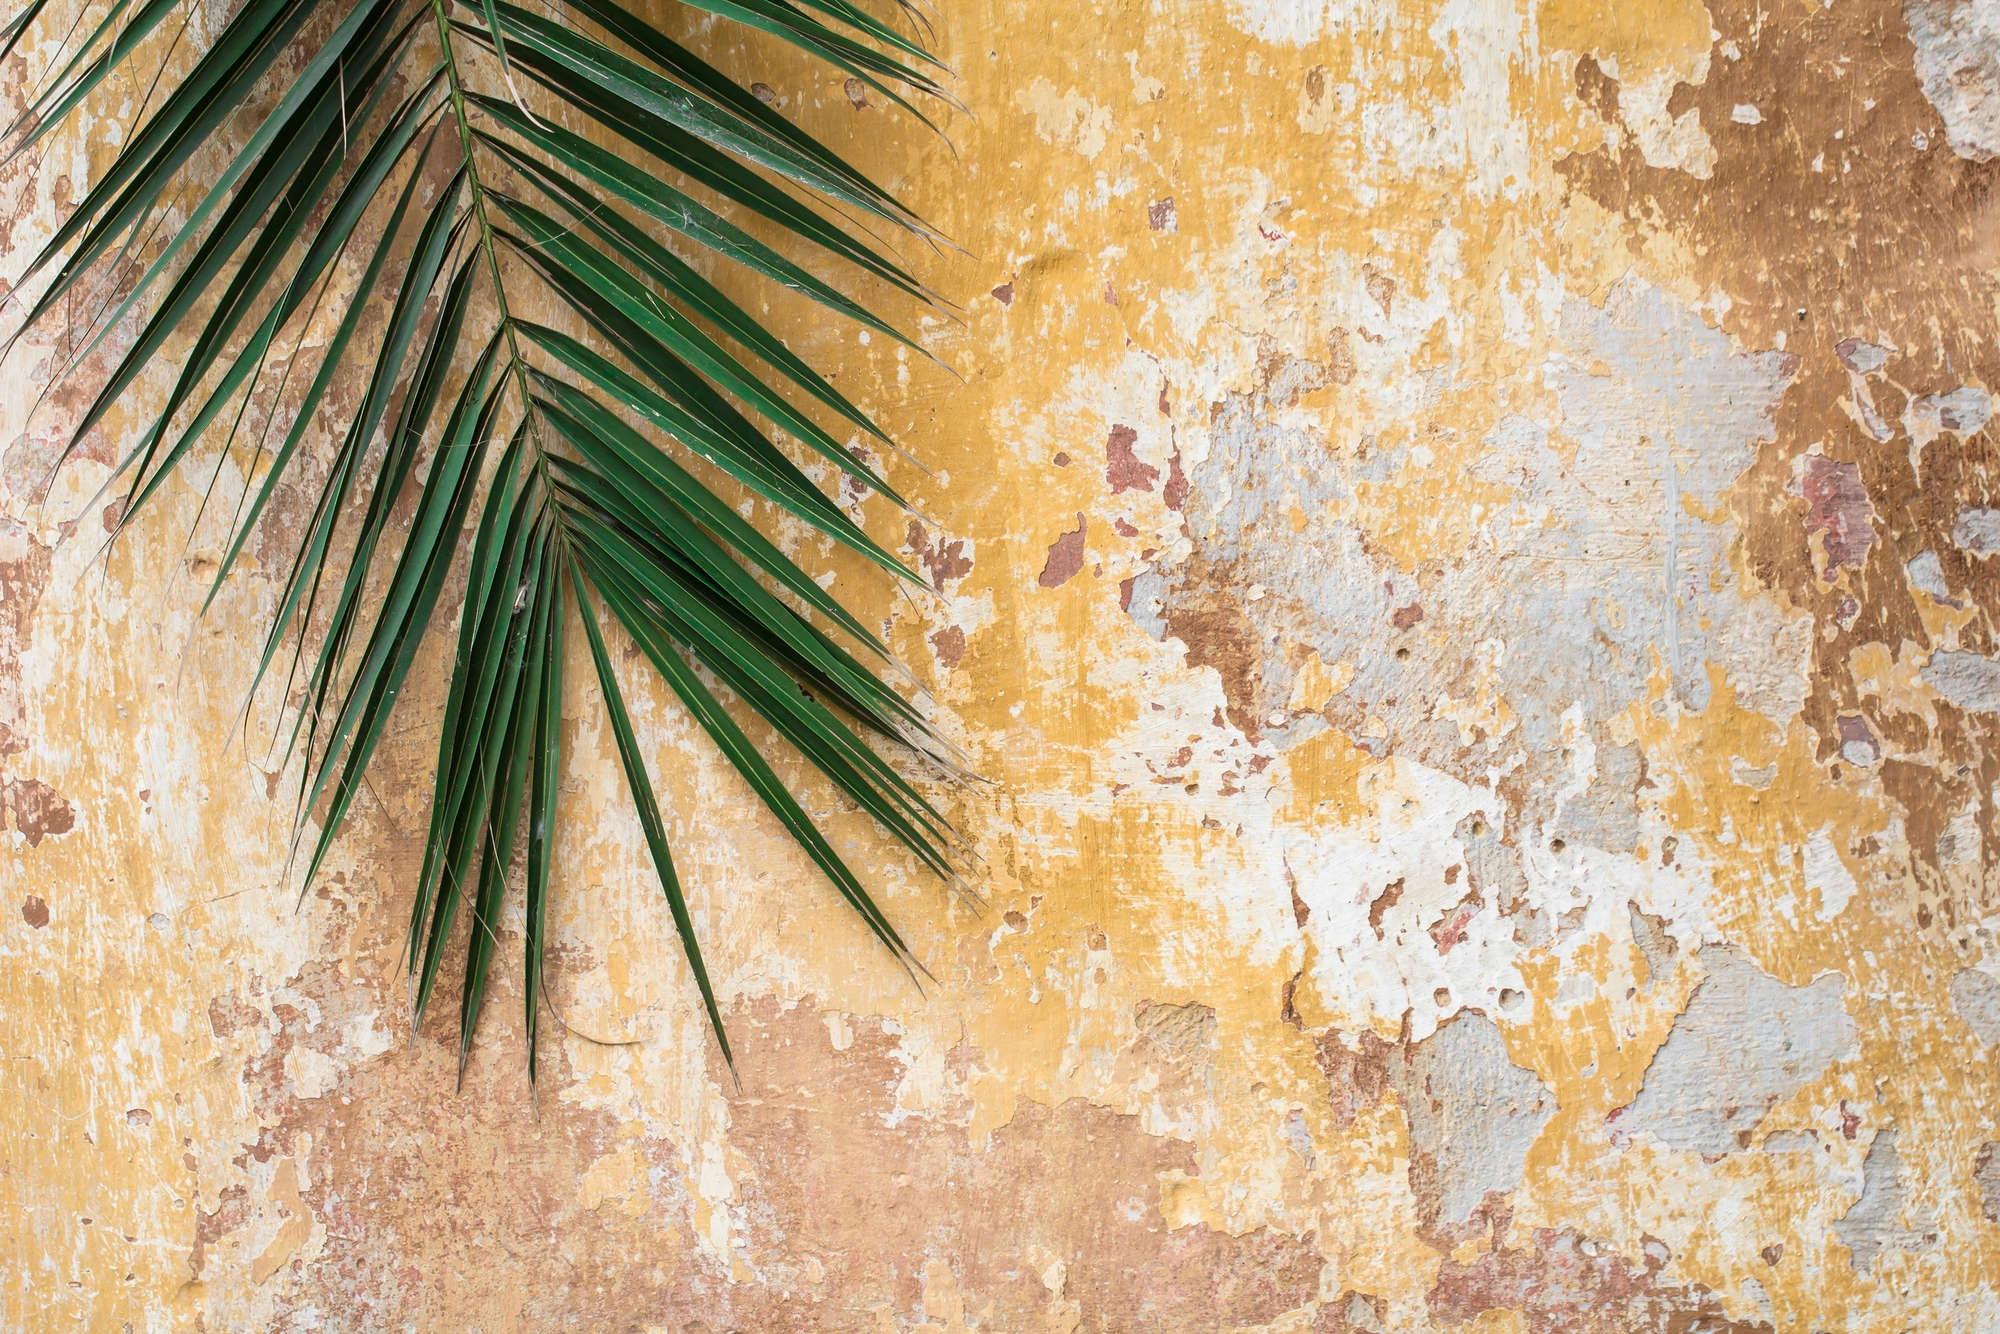             Mural de la naturaleza de la hoja de palma frente a la pared de piedra en nácar liso
        